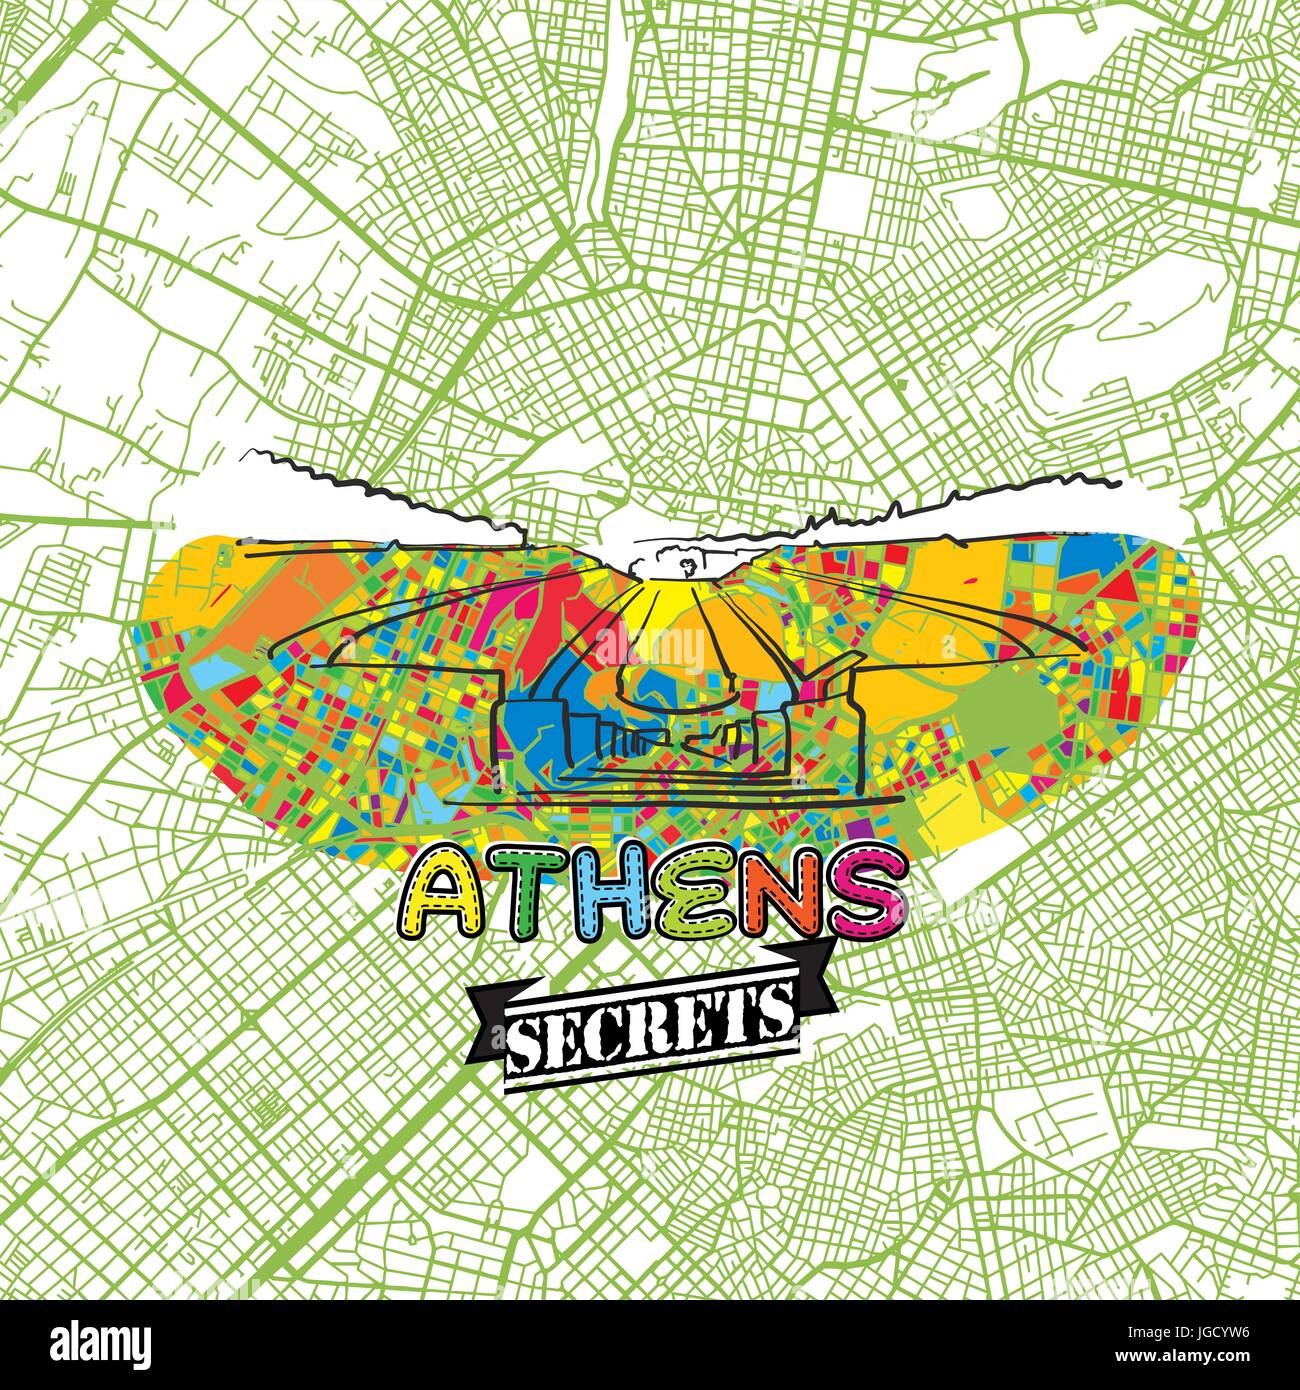 Athen Reise Geheimnisse Art Map für die Zuordnung von Experten und Reiseführer. Handgemachte Stadt Logo, Typo-Abzeichen und Hand gezeichnete Vektor-Bild an der Spitze sind gruppiert und Stock Vektor